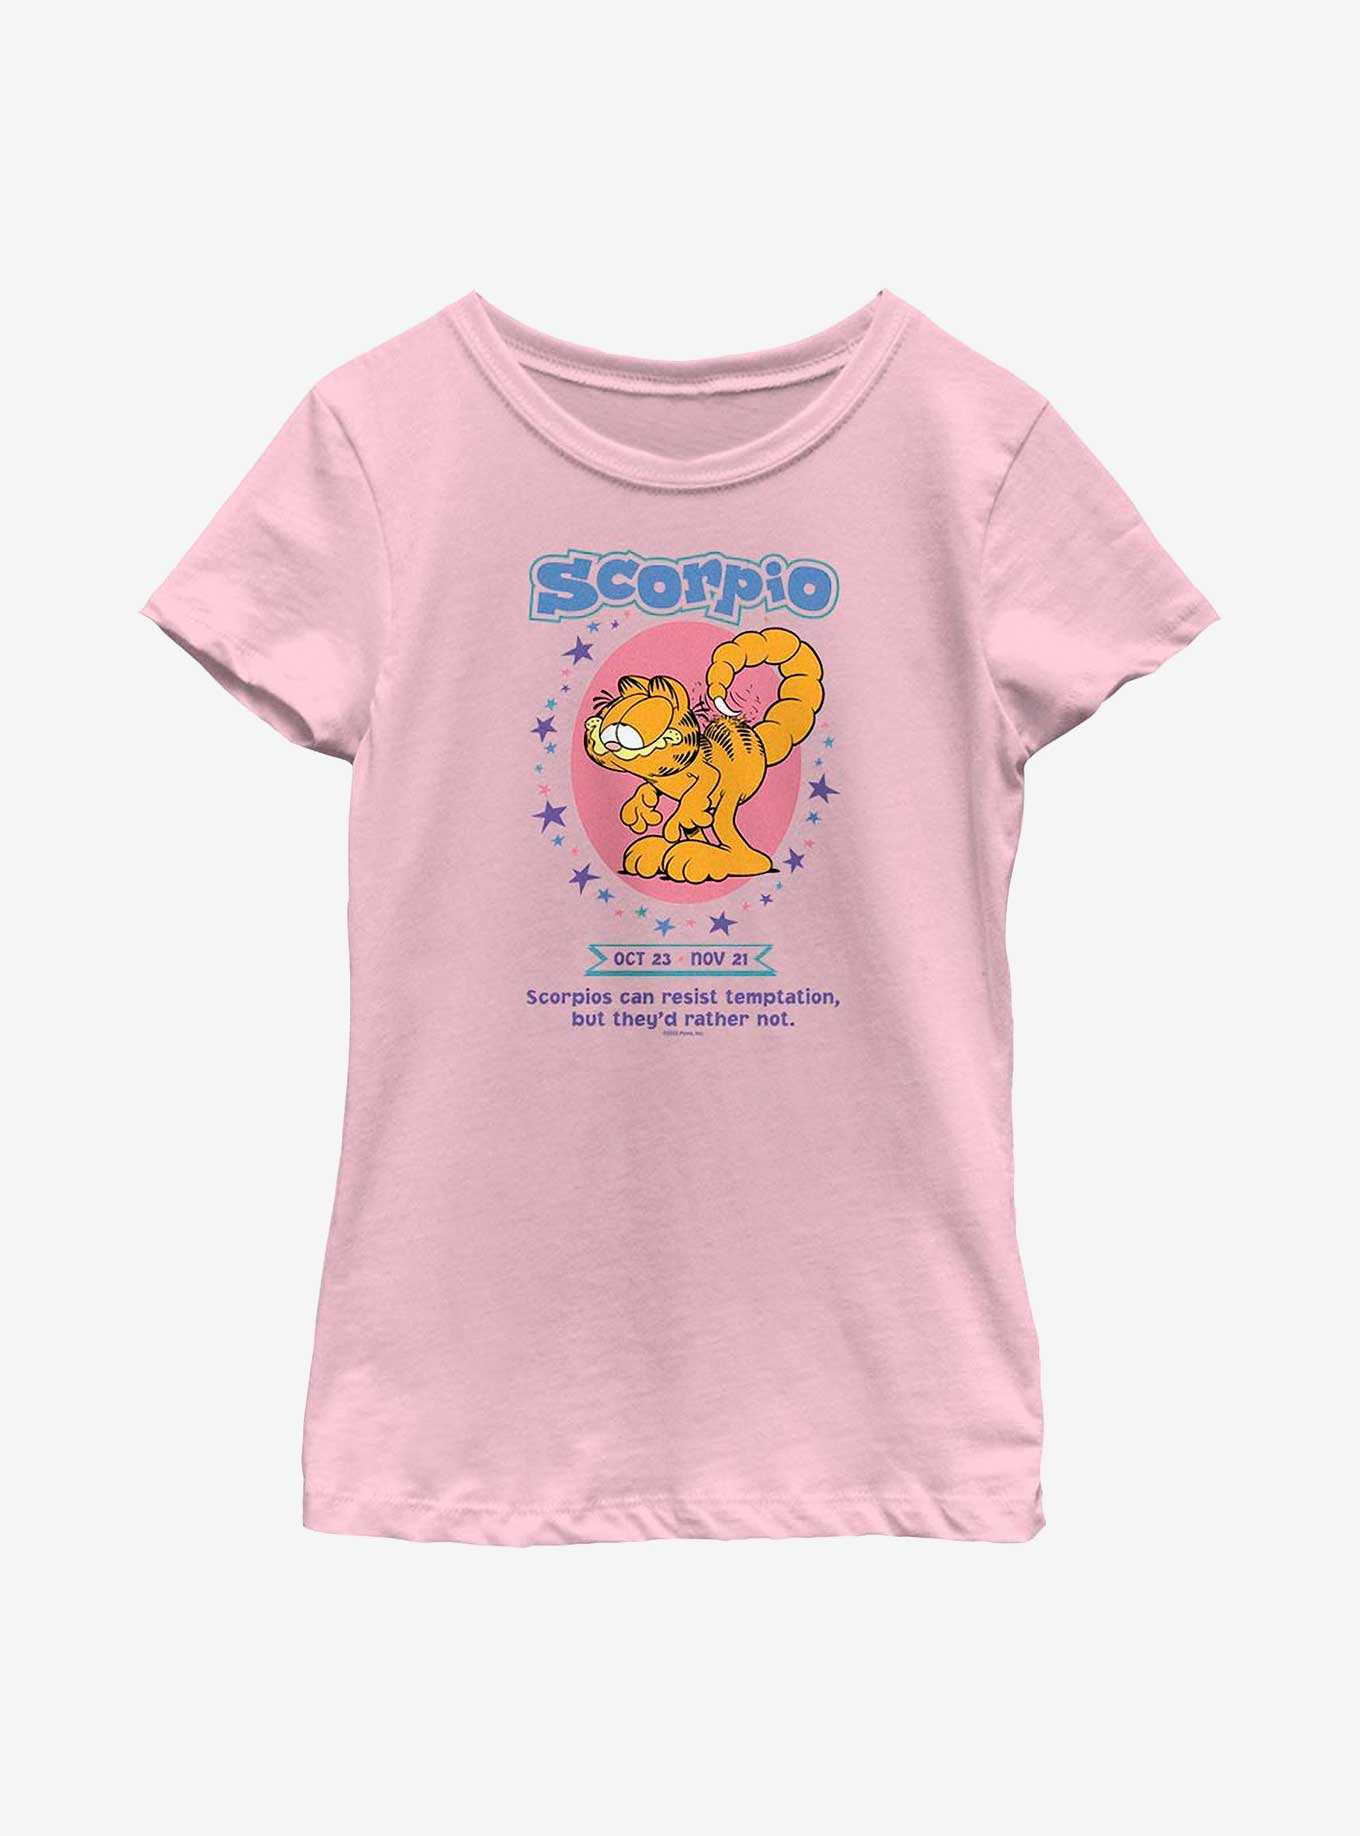 Garfield Scorpio Horoscope Youth Girl's T-Shirt, , hi-res